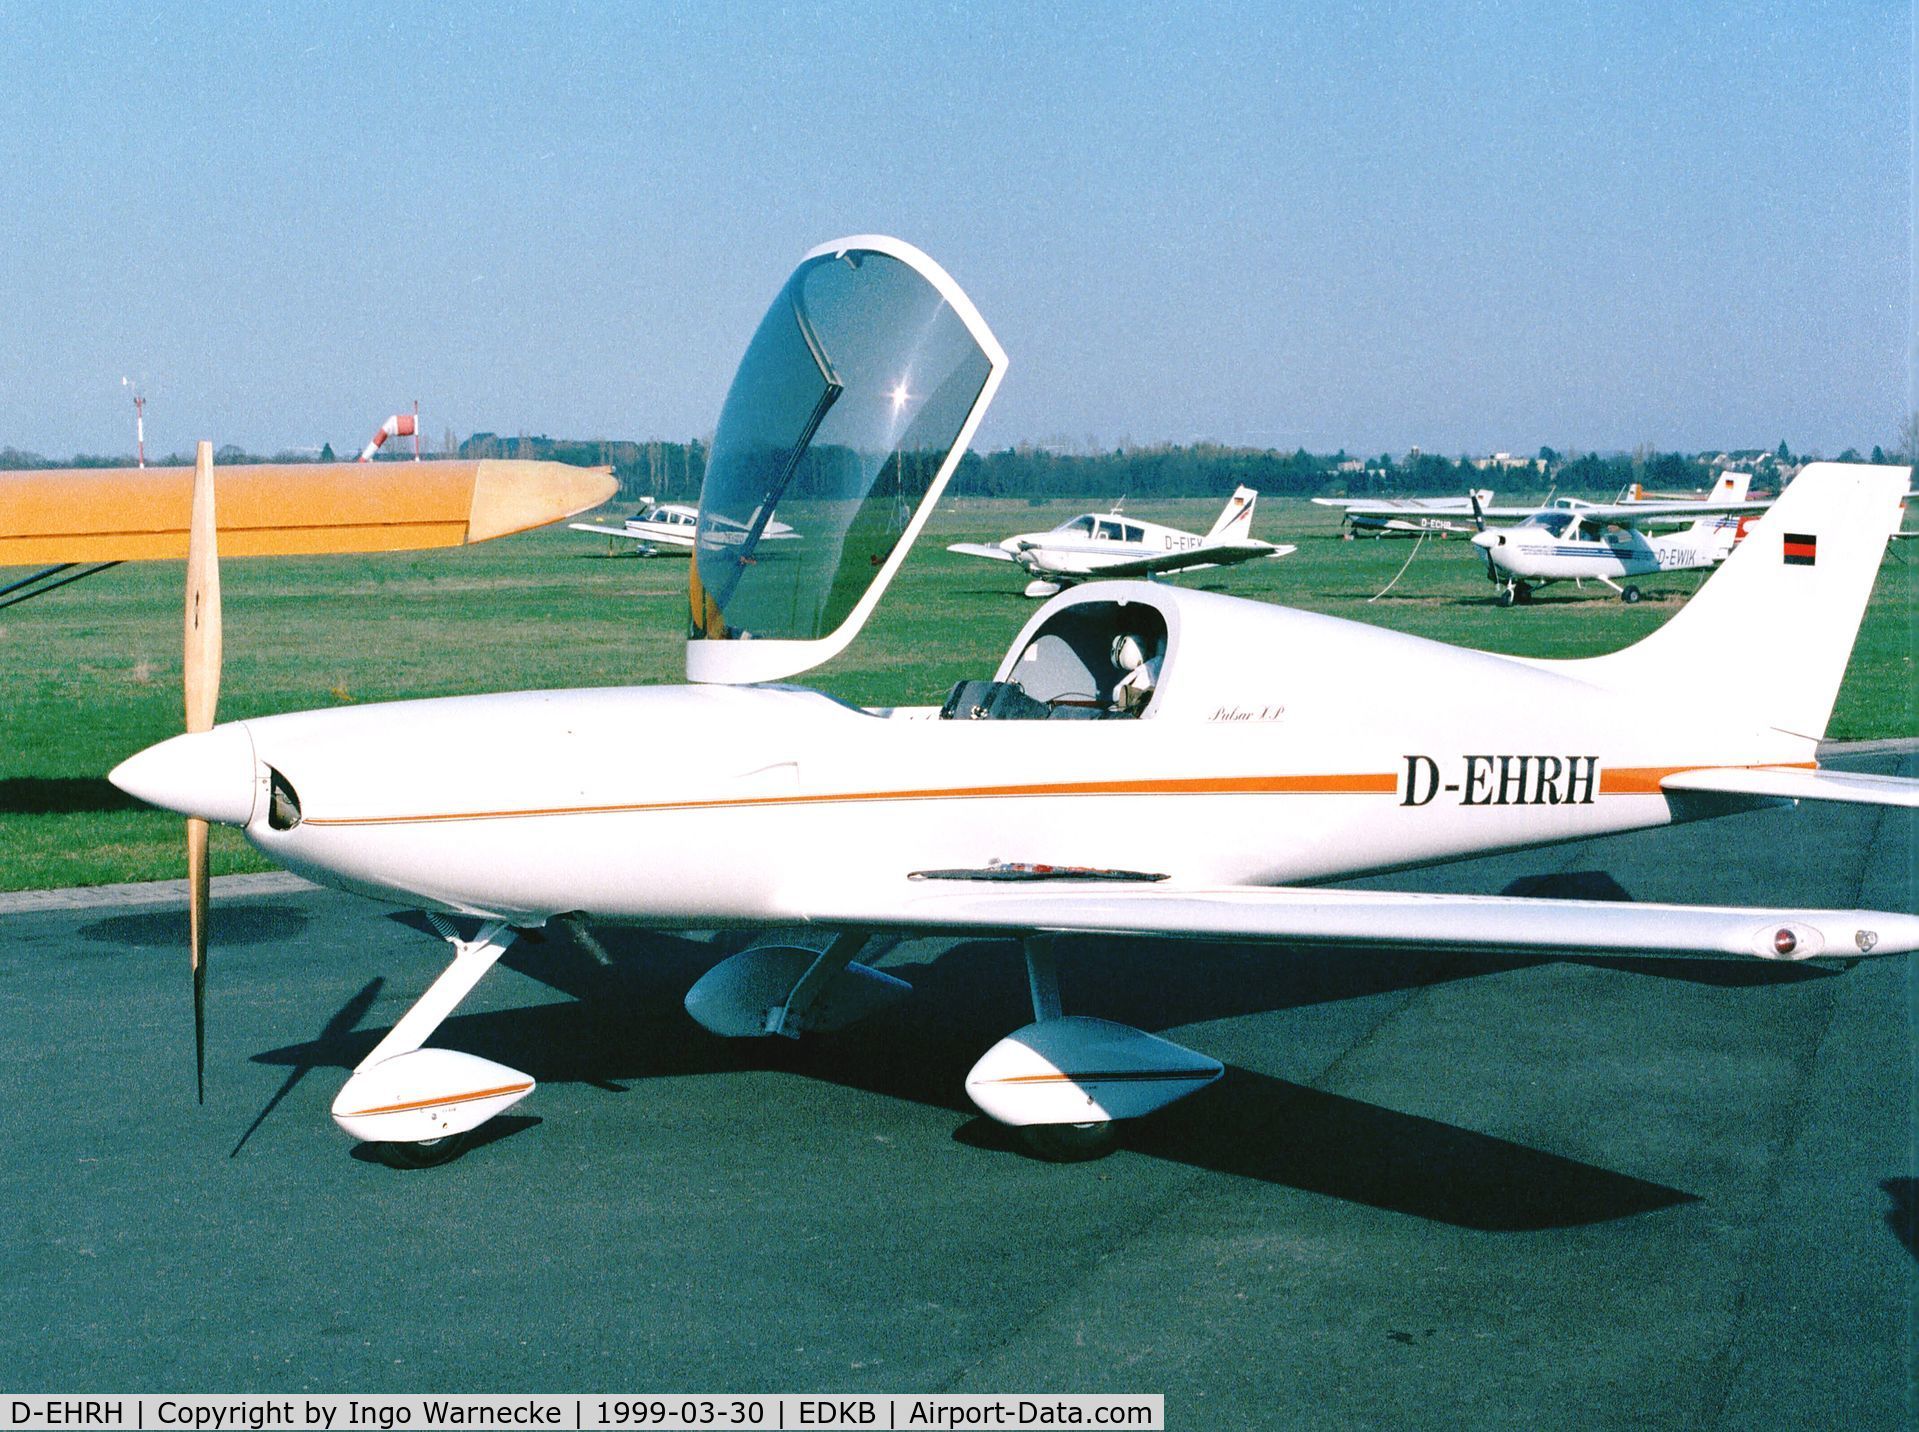 D-EHRH, Aero Designs Pulsar XP C/N 1805, Aero Designs (Hoffmann) Pulsar XP at Bonn-Hangelar airfield